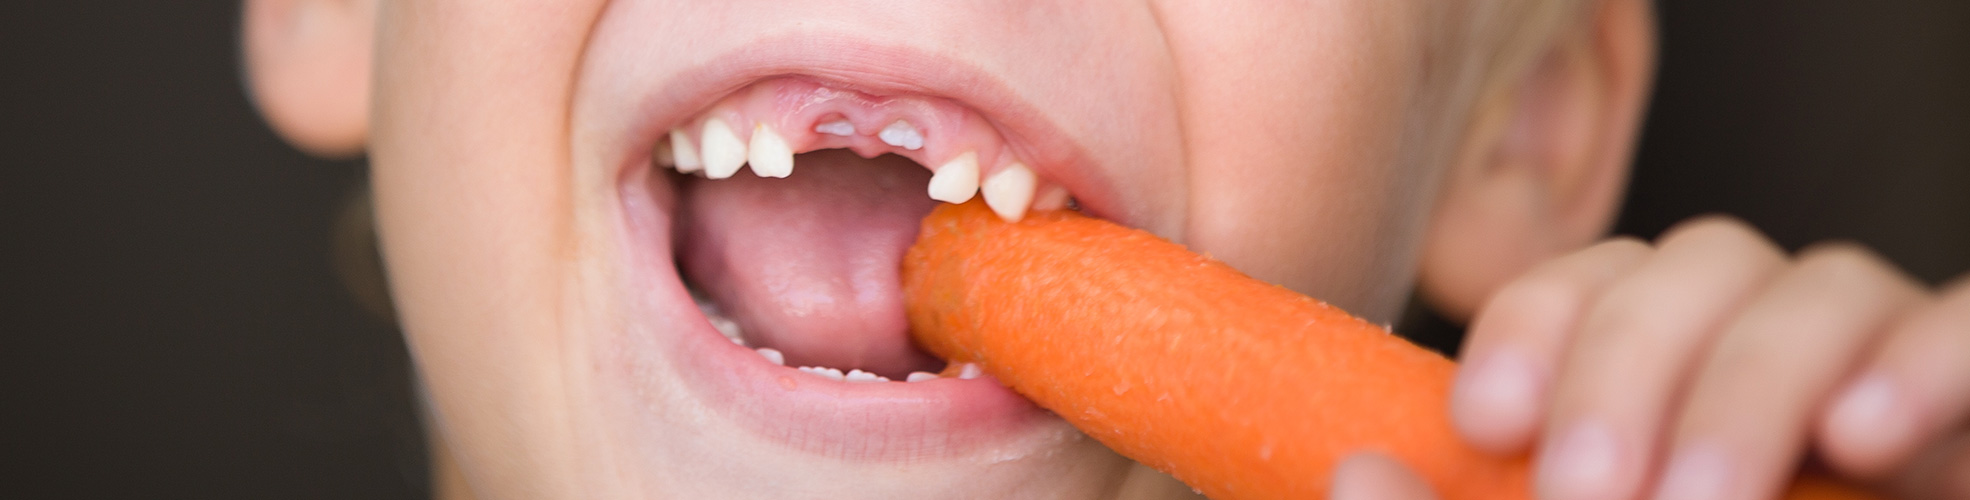 Pulizia dei denti dei bambini e alimentazione. I consigli dello Studio Dentisticodi Pescara Paolo Fulgenzi